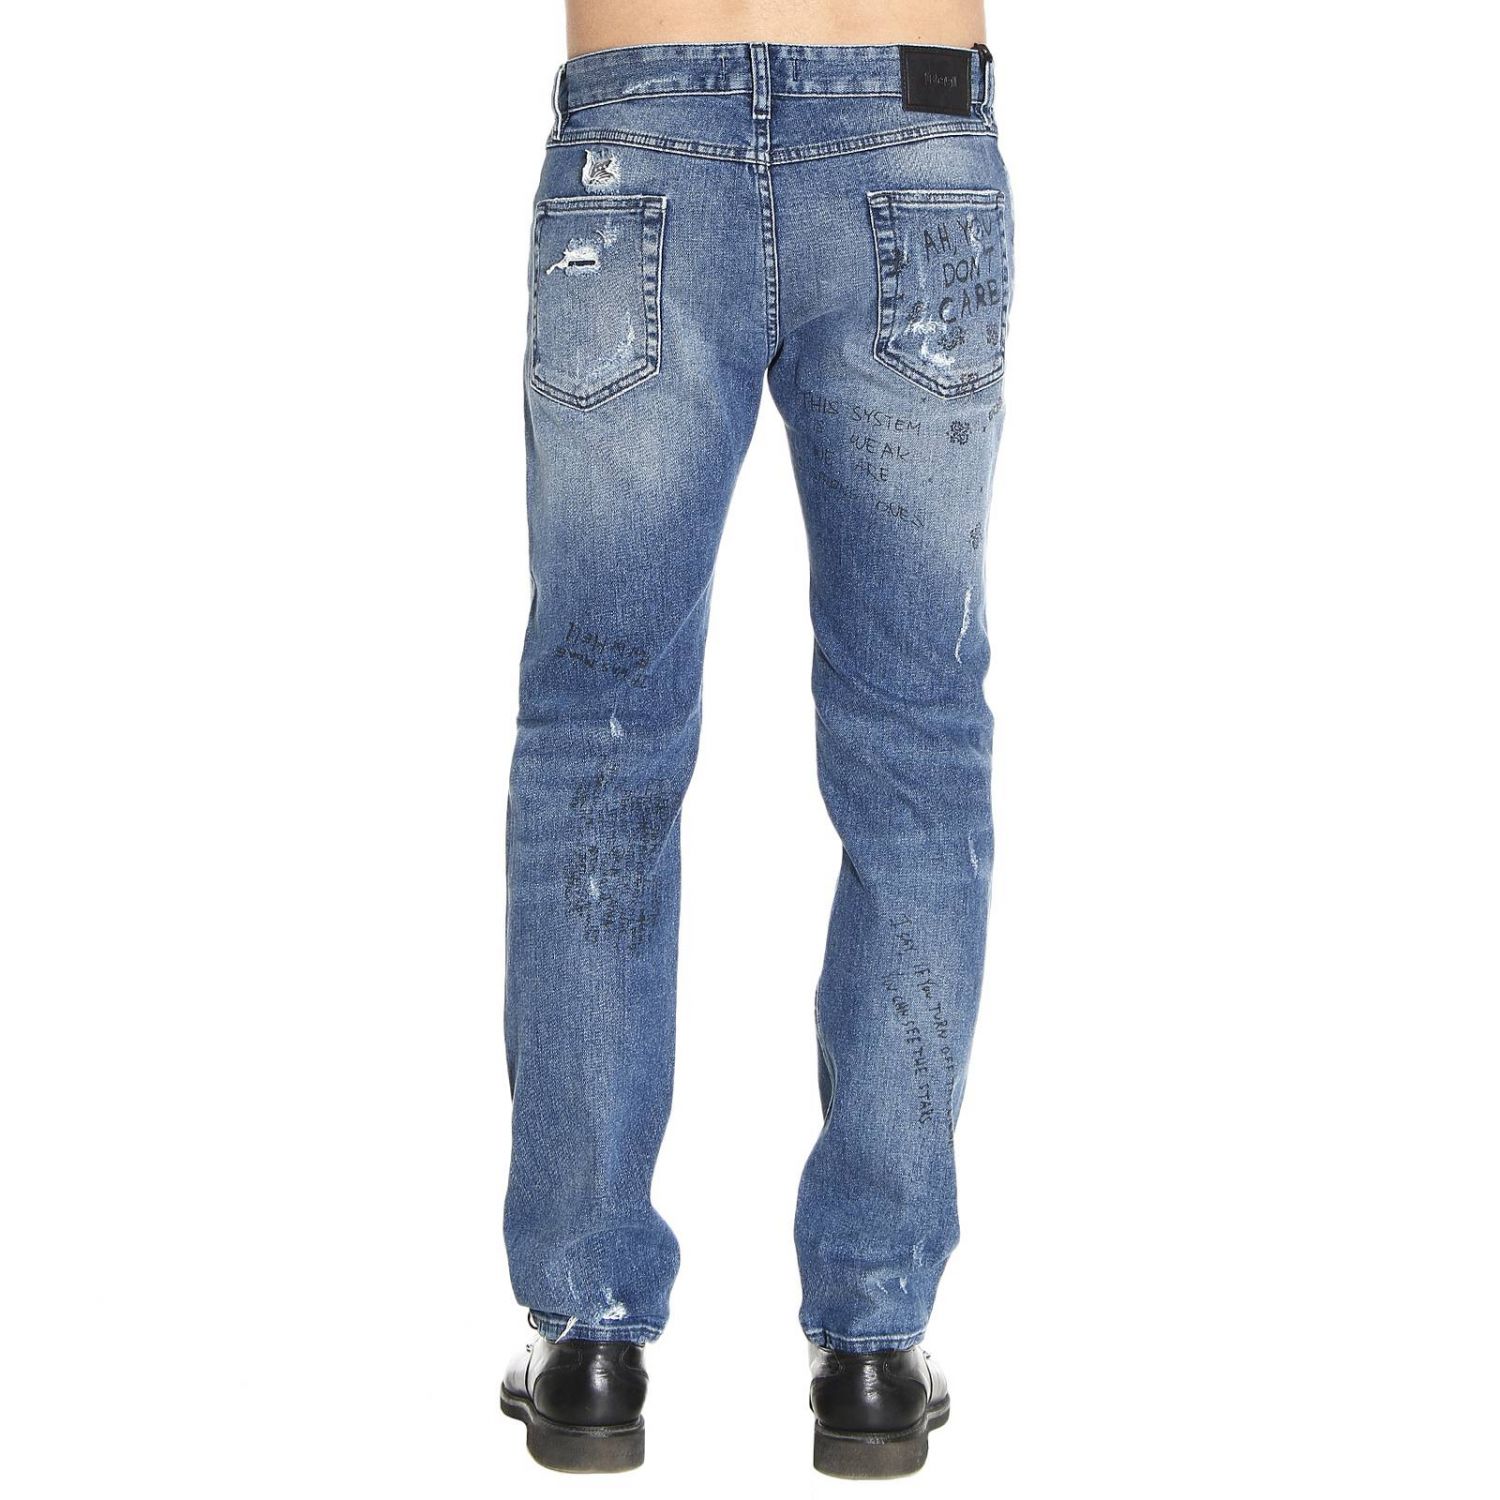 Just Cavalli Outlet: Jeans men - Denim | Jeans Just Cavalli S01LA0058 ...